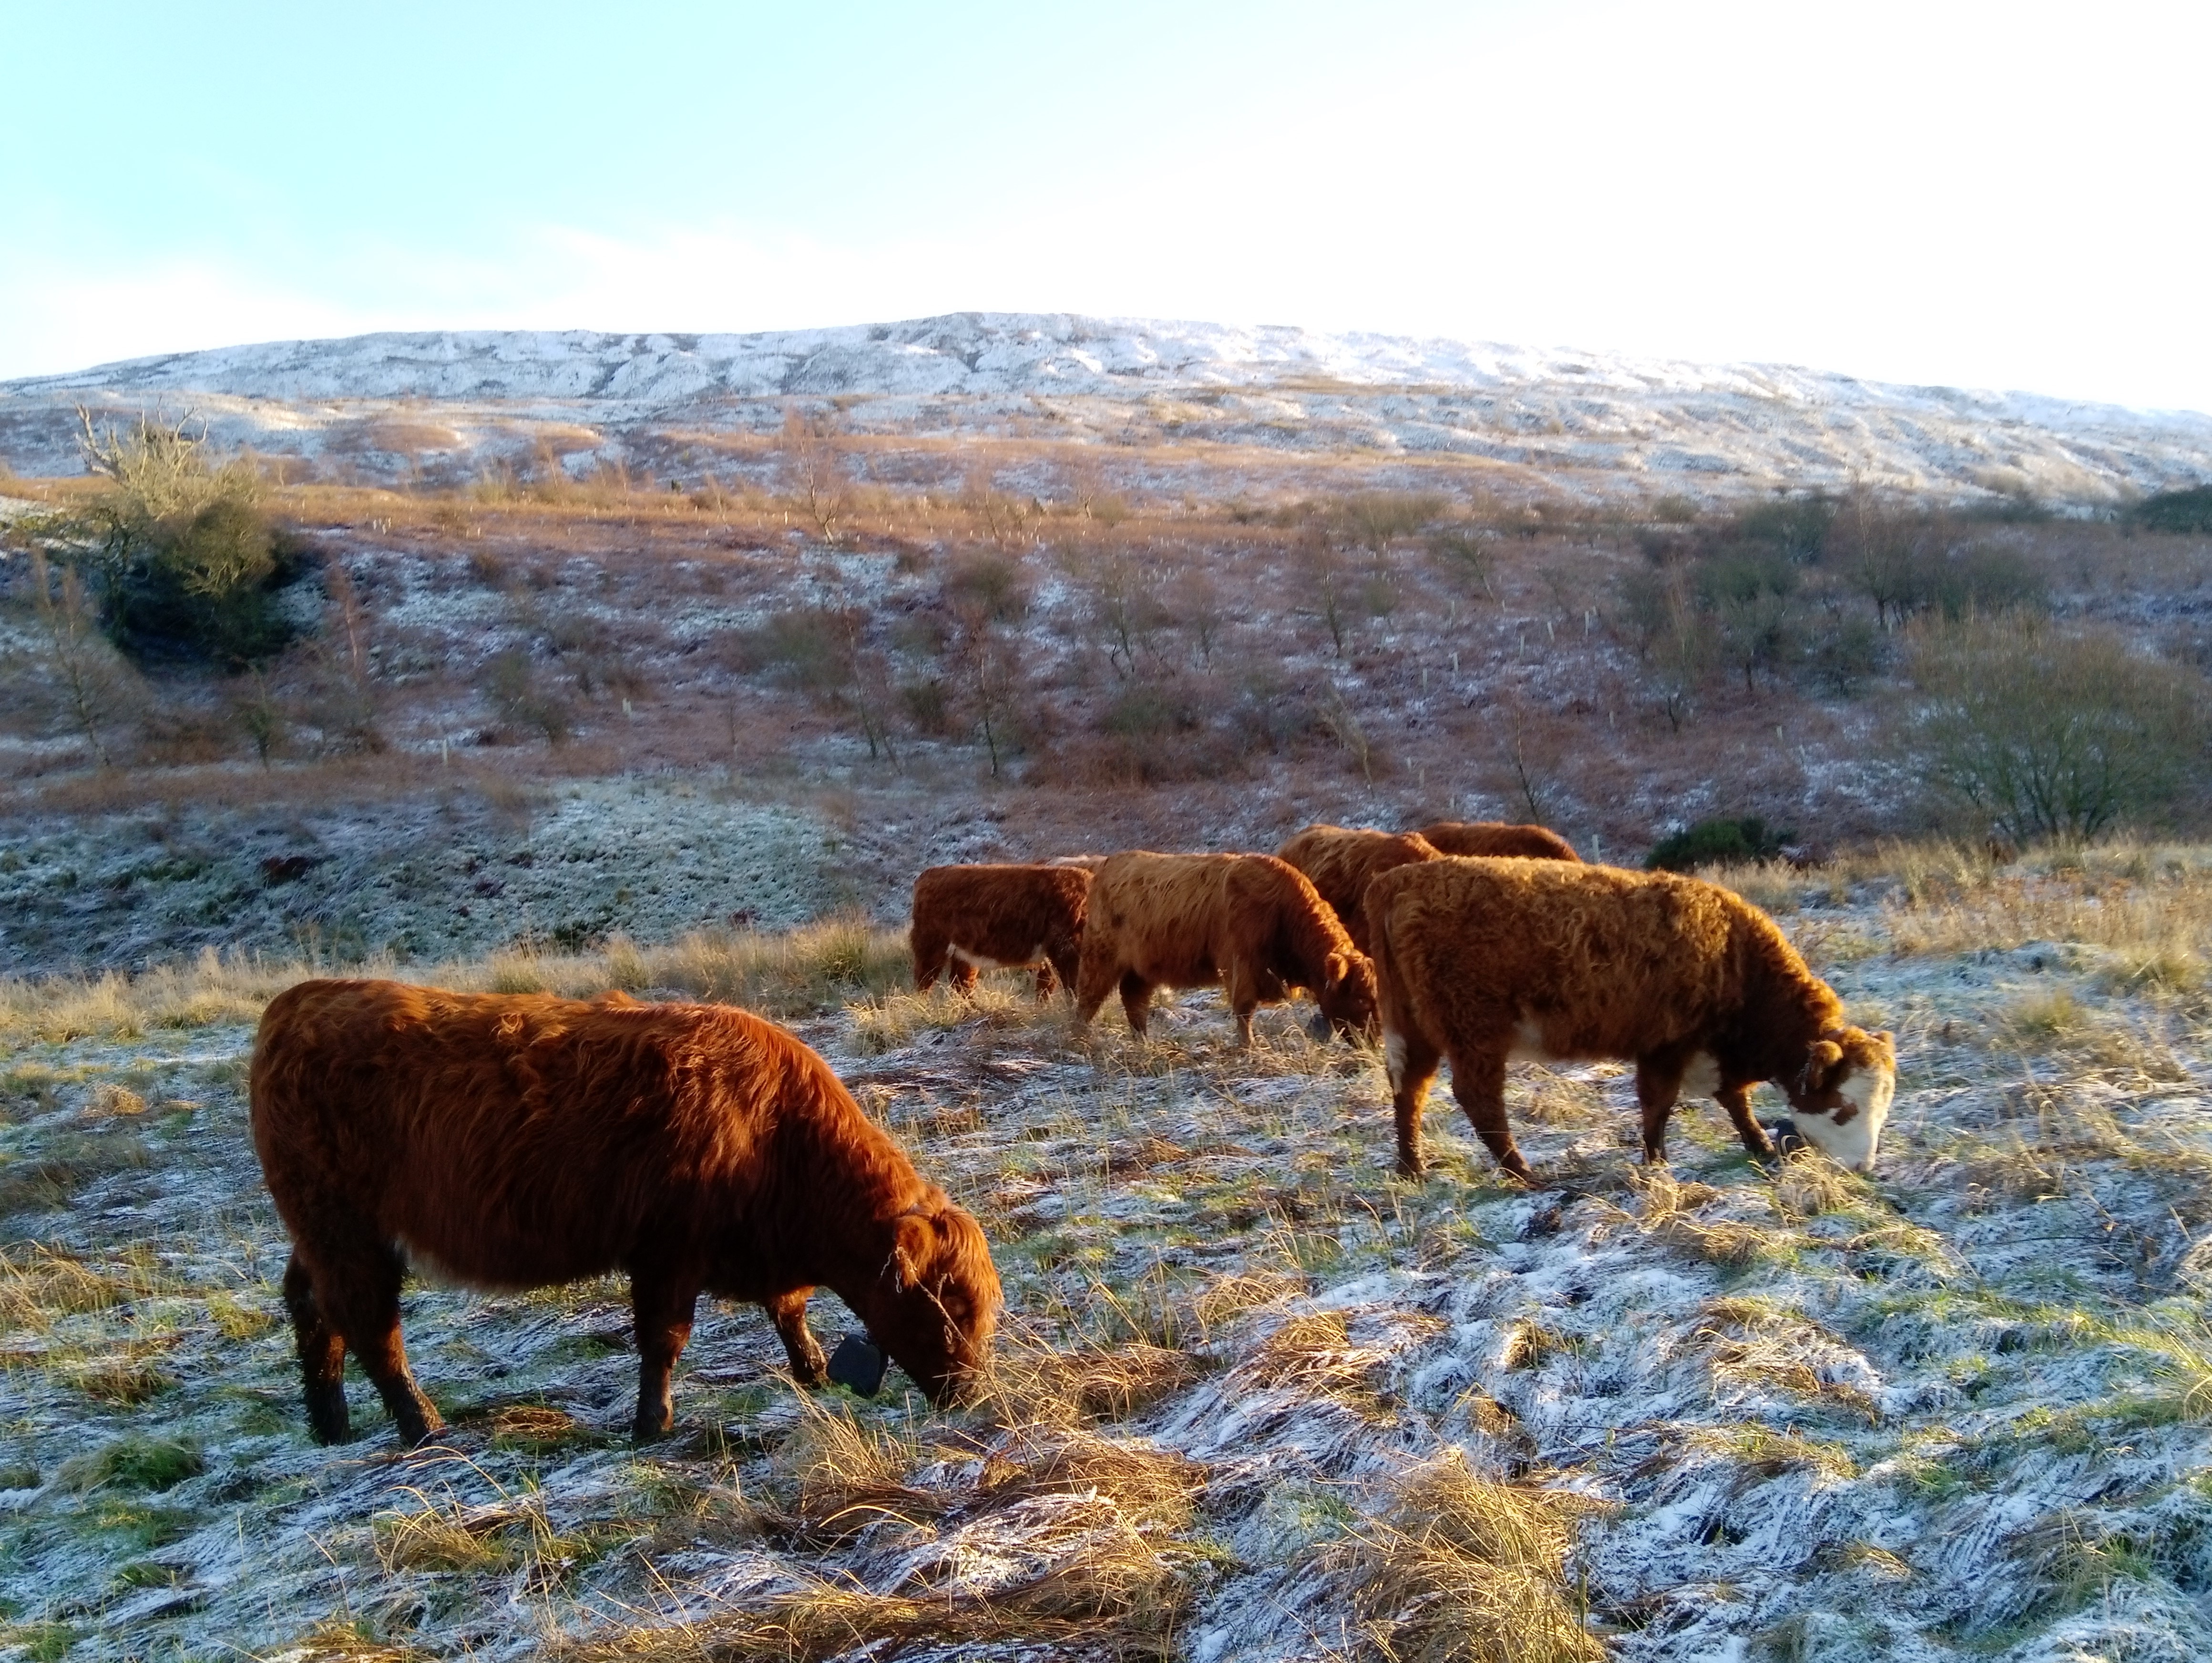 Cattle grazing on snowy ground